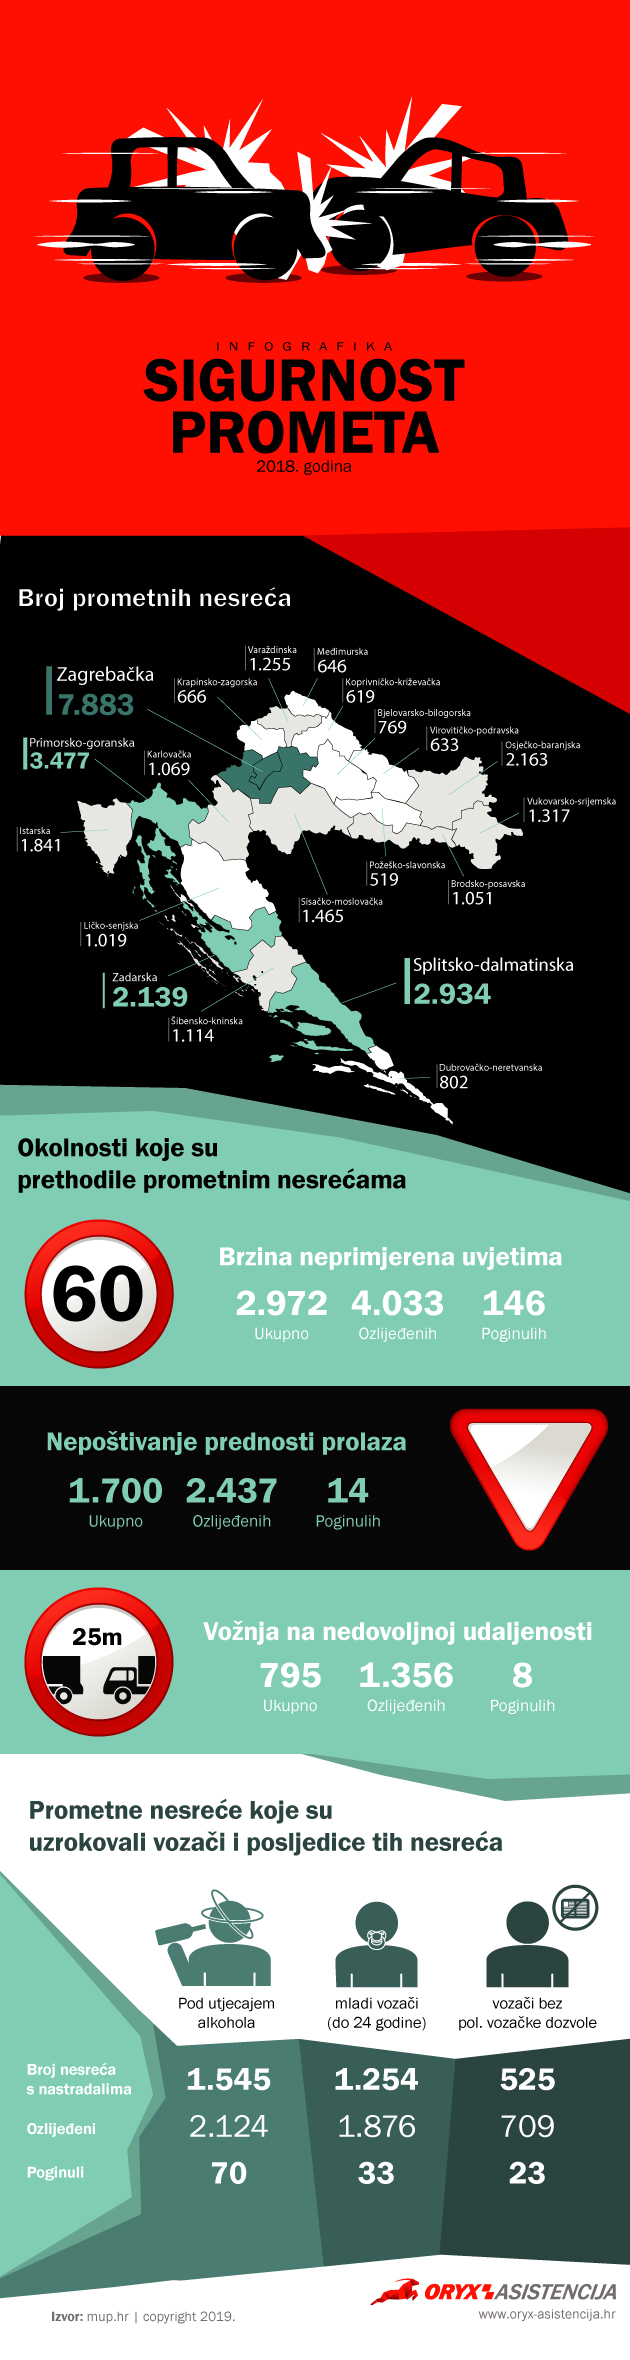 sigurnost u prometu infografika